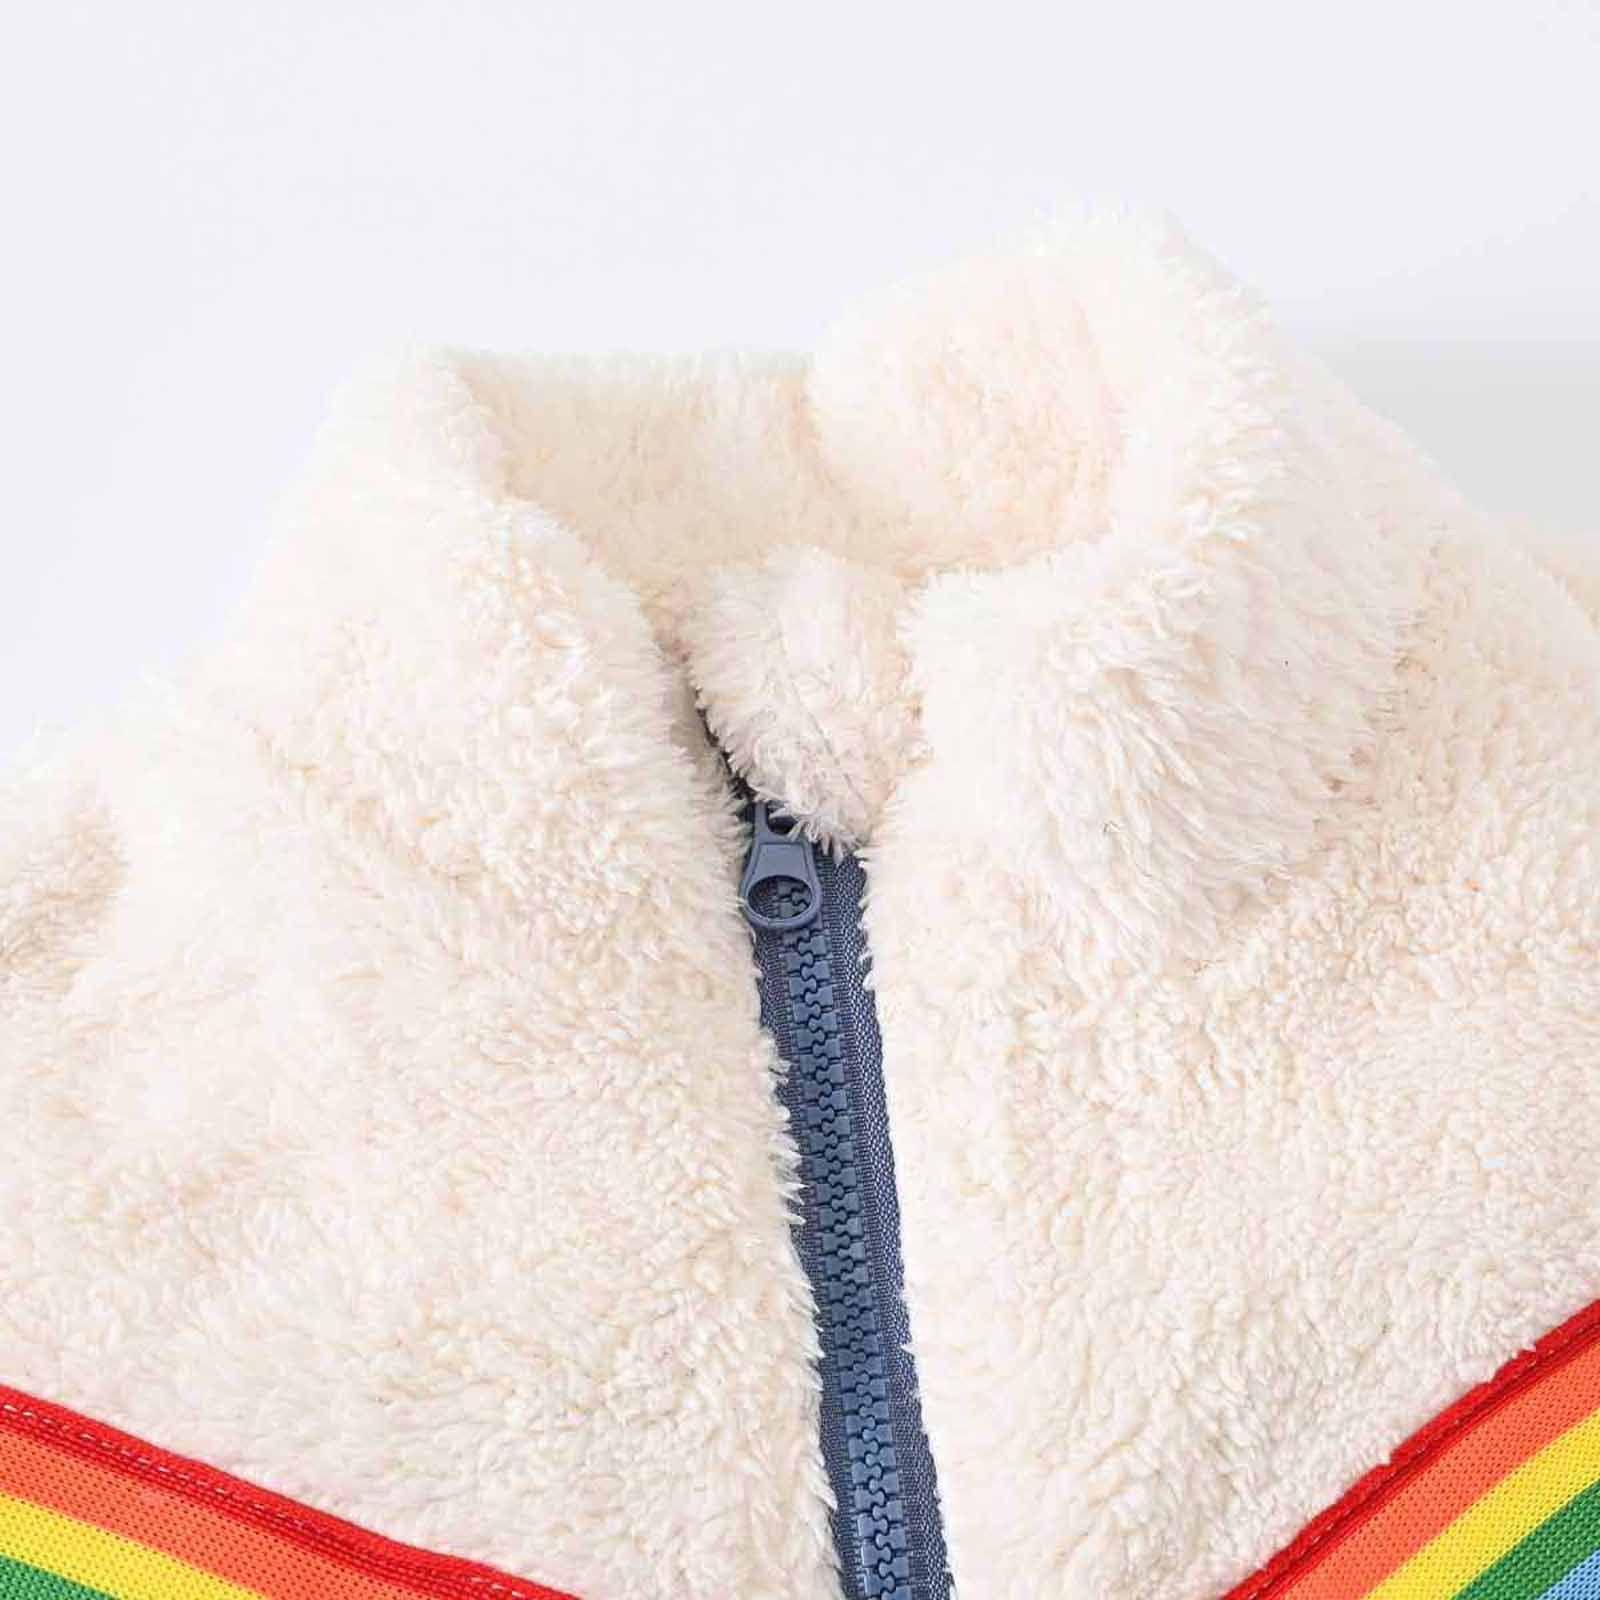 YYDGH Girls Zipper Jacket Fuzzy Sweatshirt Long Sleeve Casual Cozy Fleece Sherpa Outwear Coat Full-Zip Rainbow Jackets(Blue,3-4 Years) - image 3 of 8